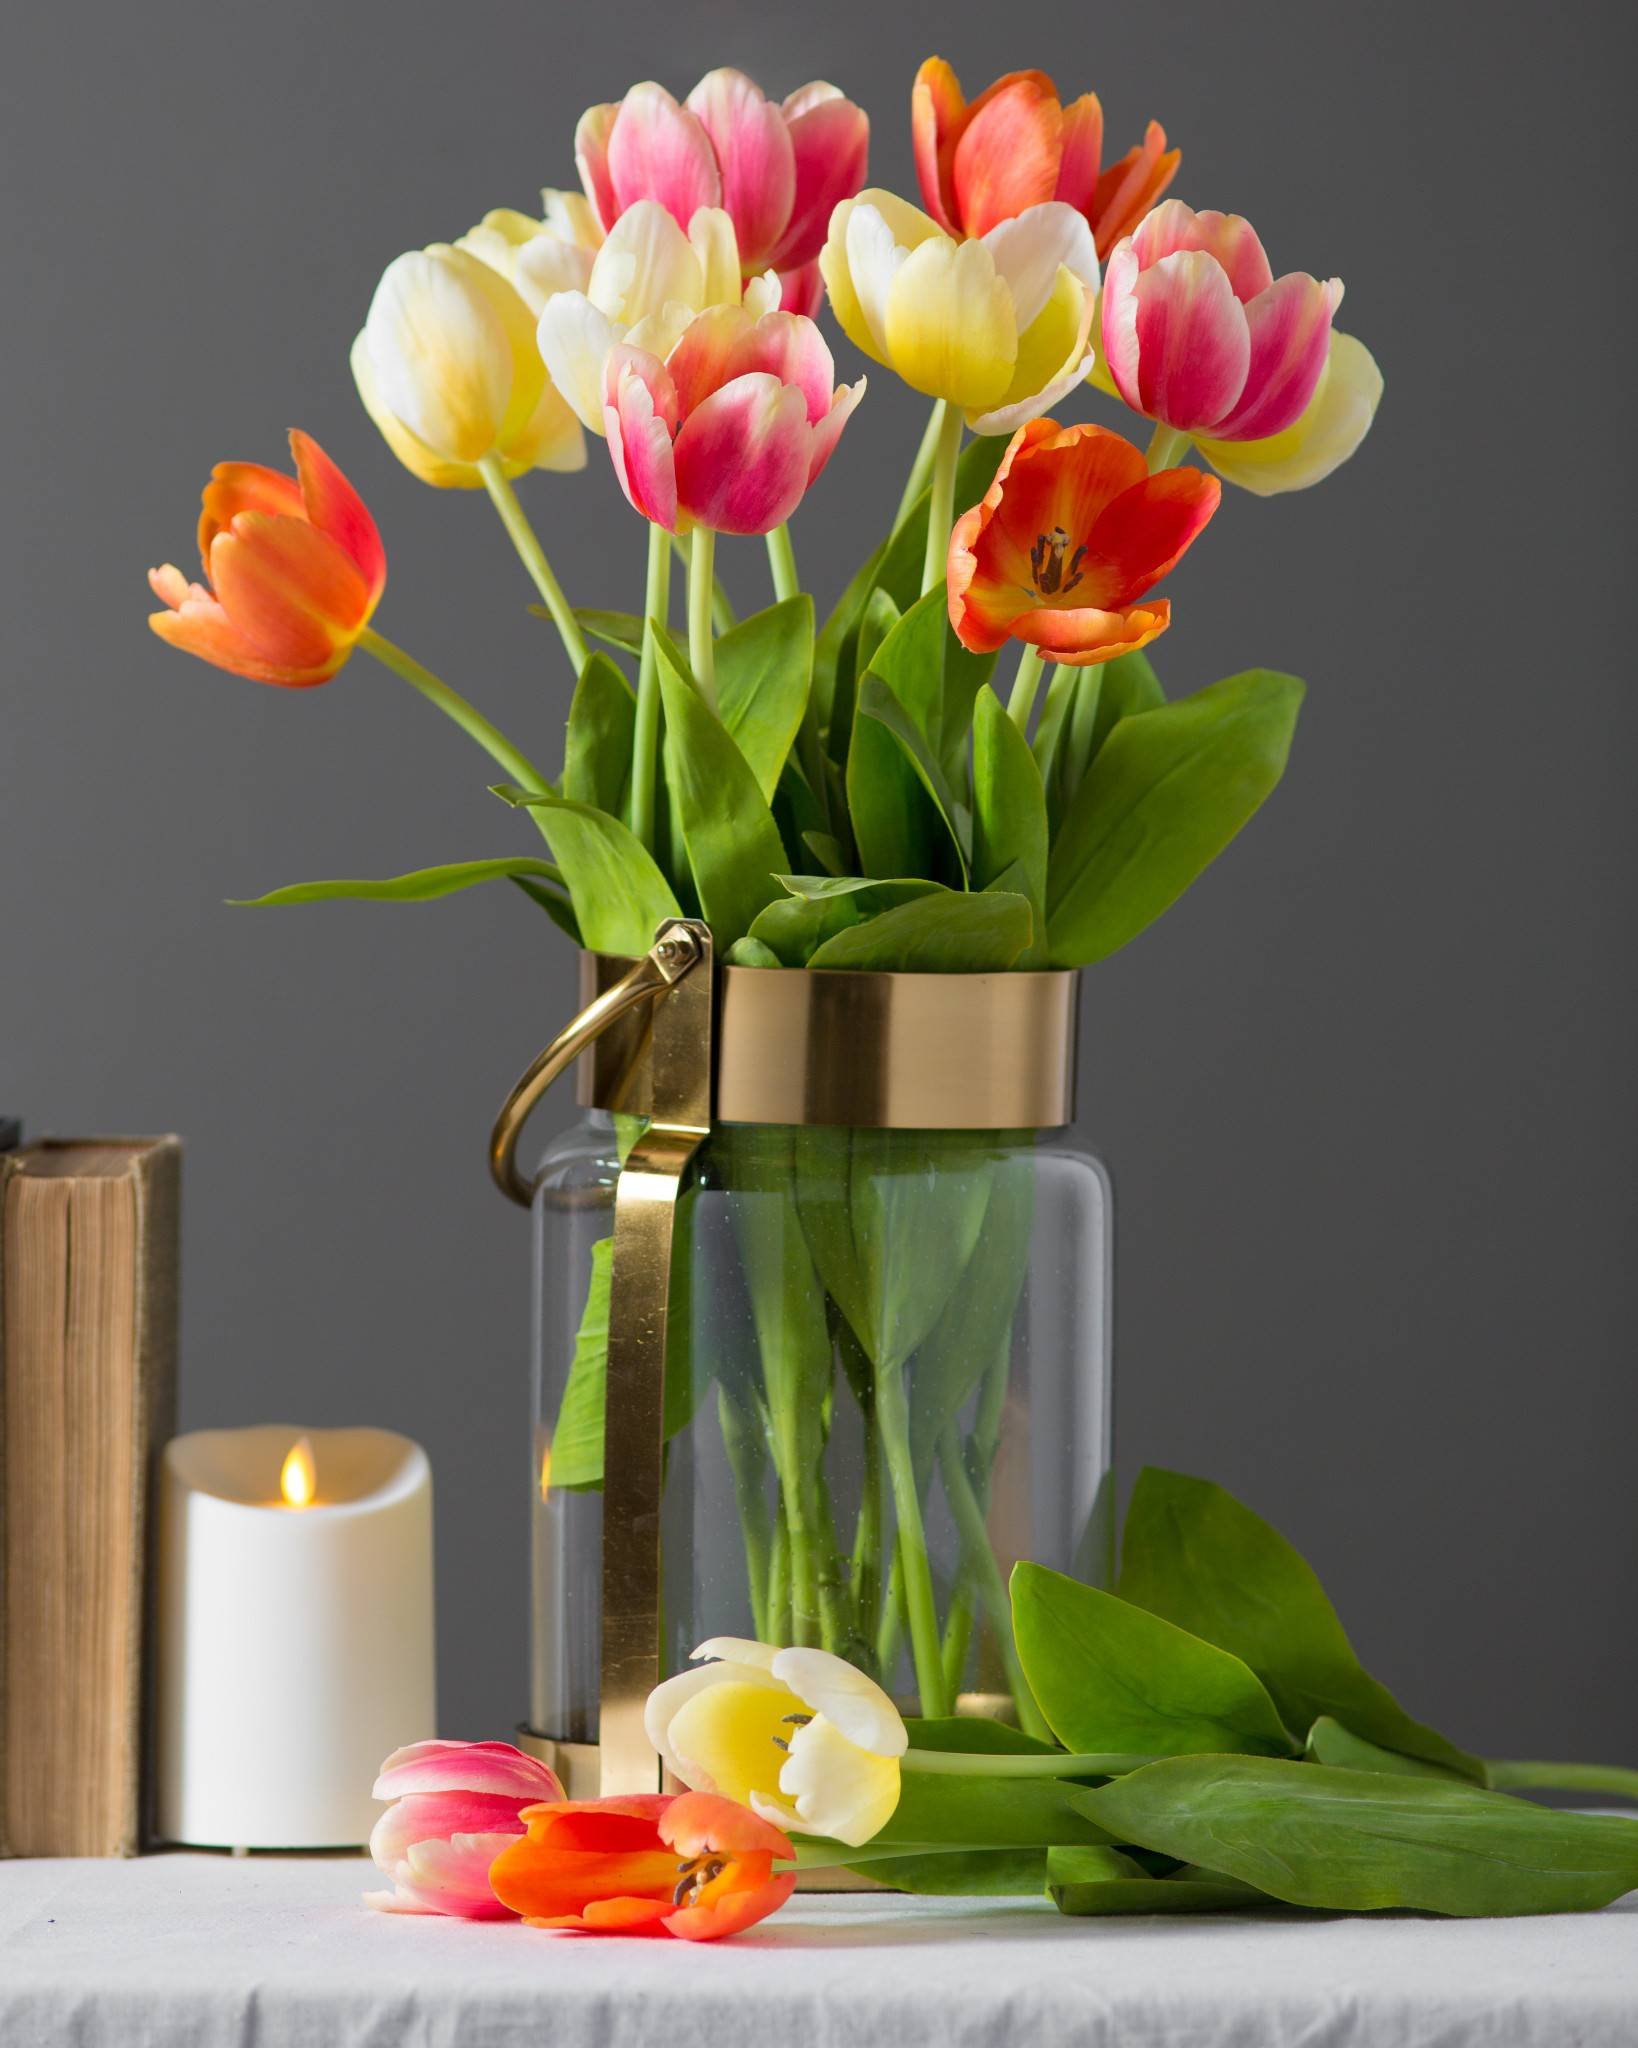 Тюльпаны в оазисе. Тюльпаны в вазе. Тюльпаны в стеклянной вазе. Дульбаны в ваззе. Тюльпаны в вазах.